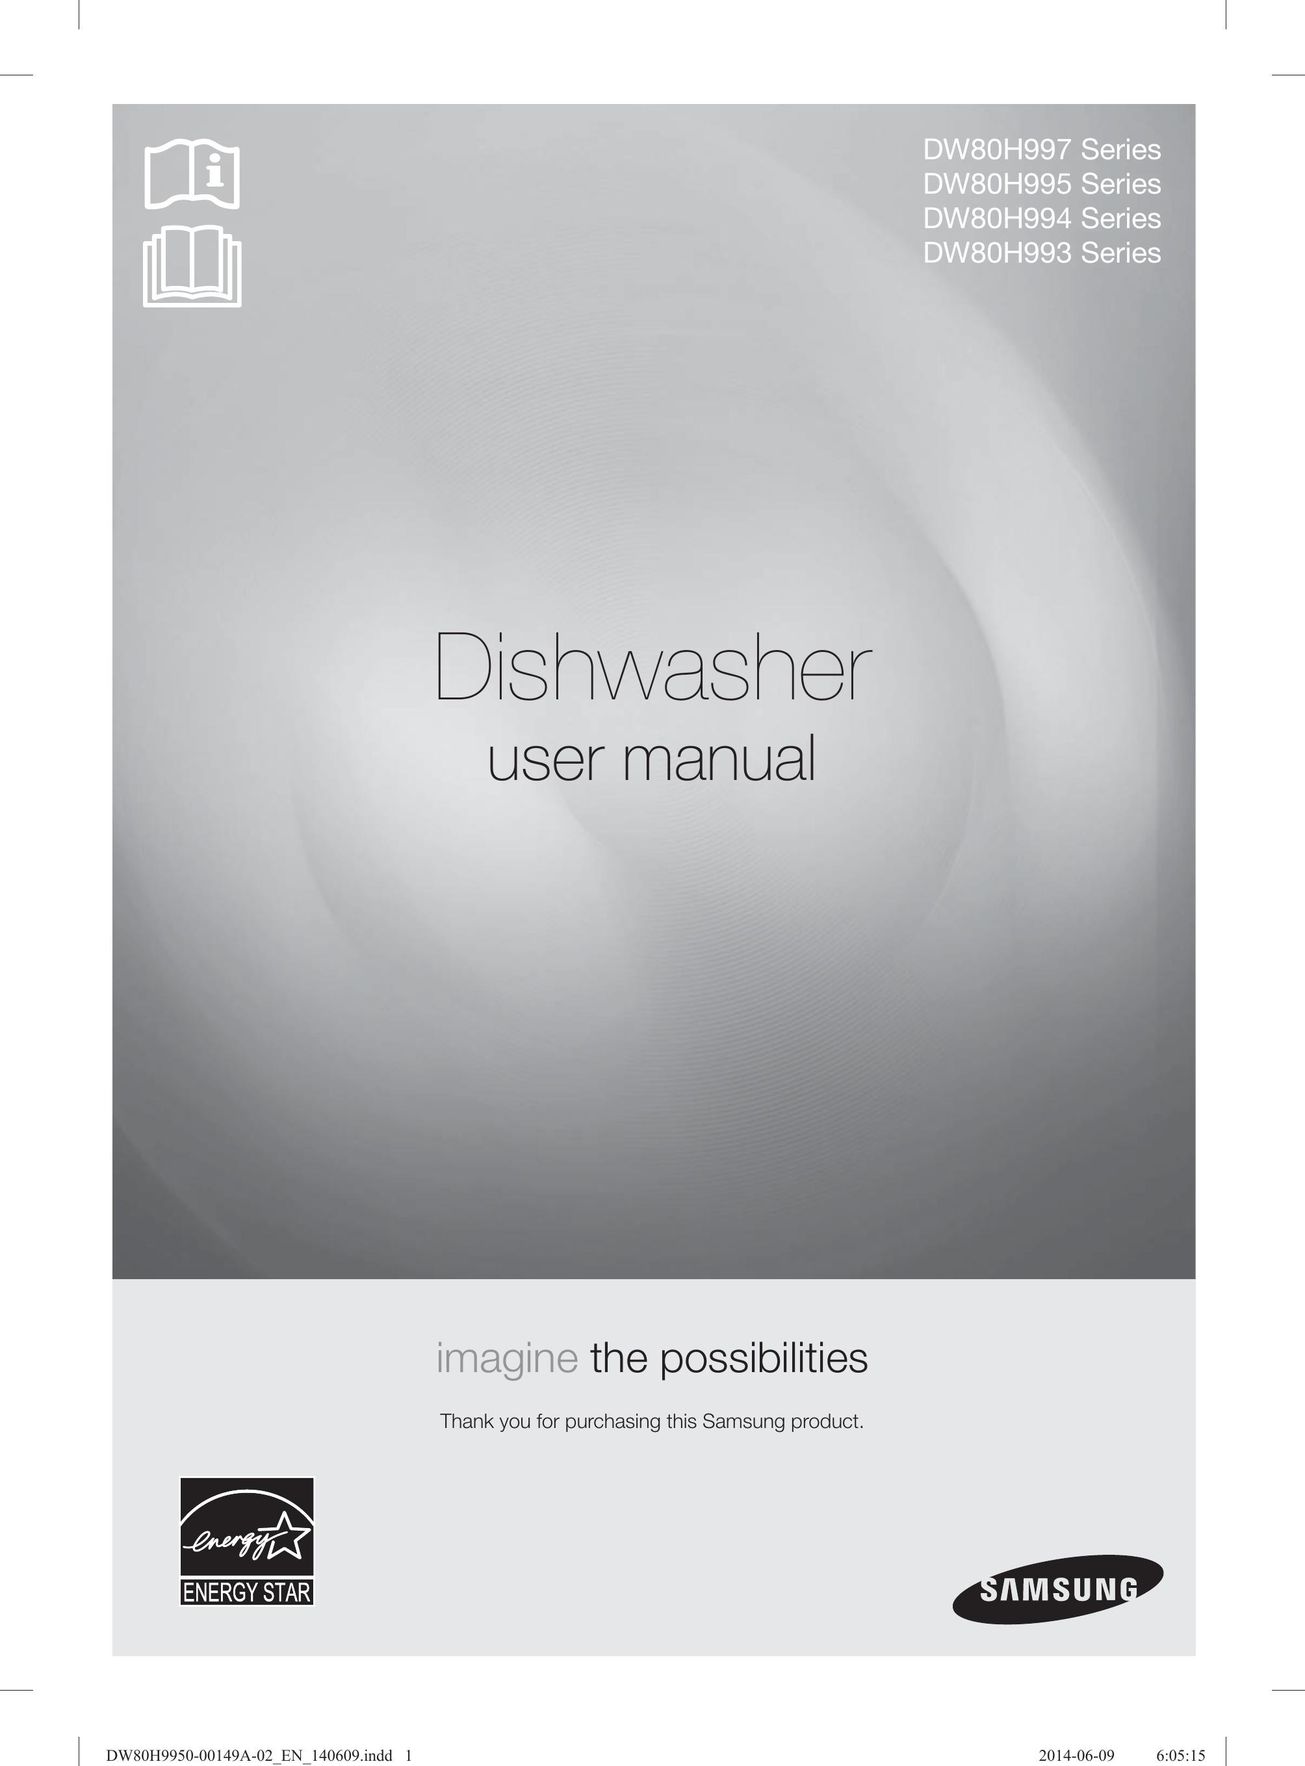 Samsung DW80H9970US Dishwasher User Manual